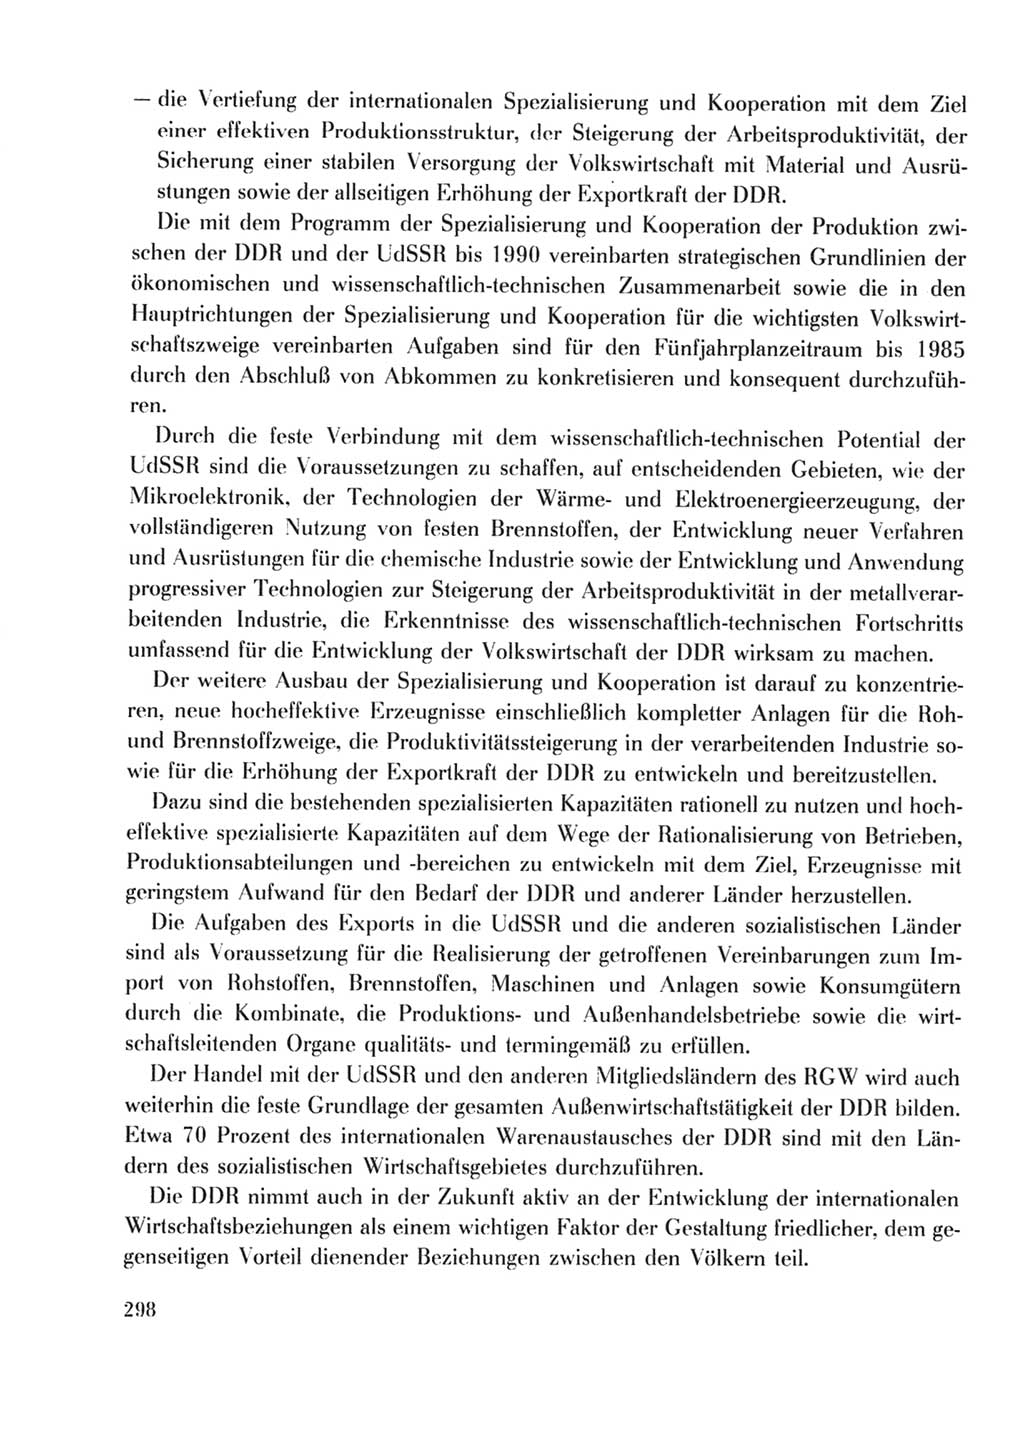 Protokoll der Verhandlungen des Ⅹ. Parteitages der Sozialistischen Einheitspartei Deutschlands (SED) [Deutsche Demokratische Republik (DDR)] 1981, Band 2, Seite 298 (Prot. Verh. Ⅹ. PT SED DDR 1981, Bd. 2, S. 298)